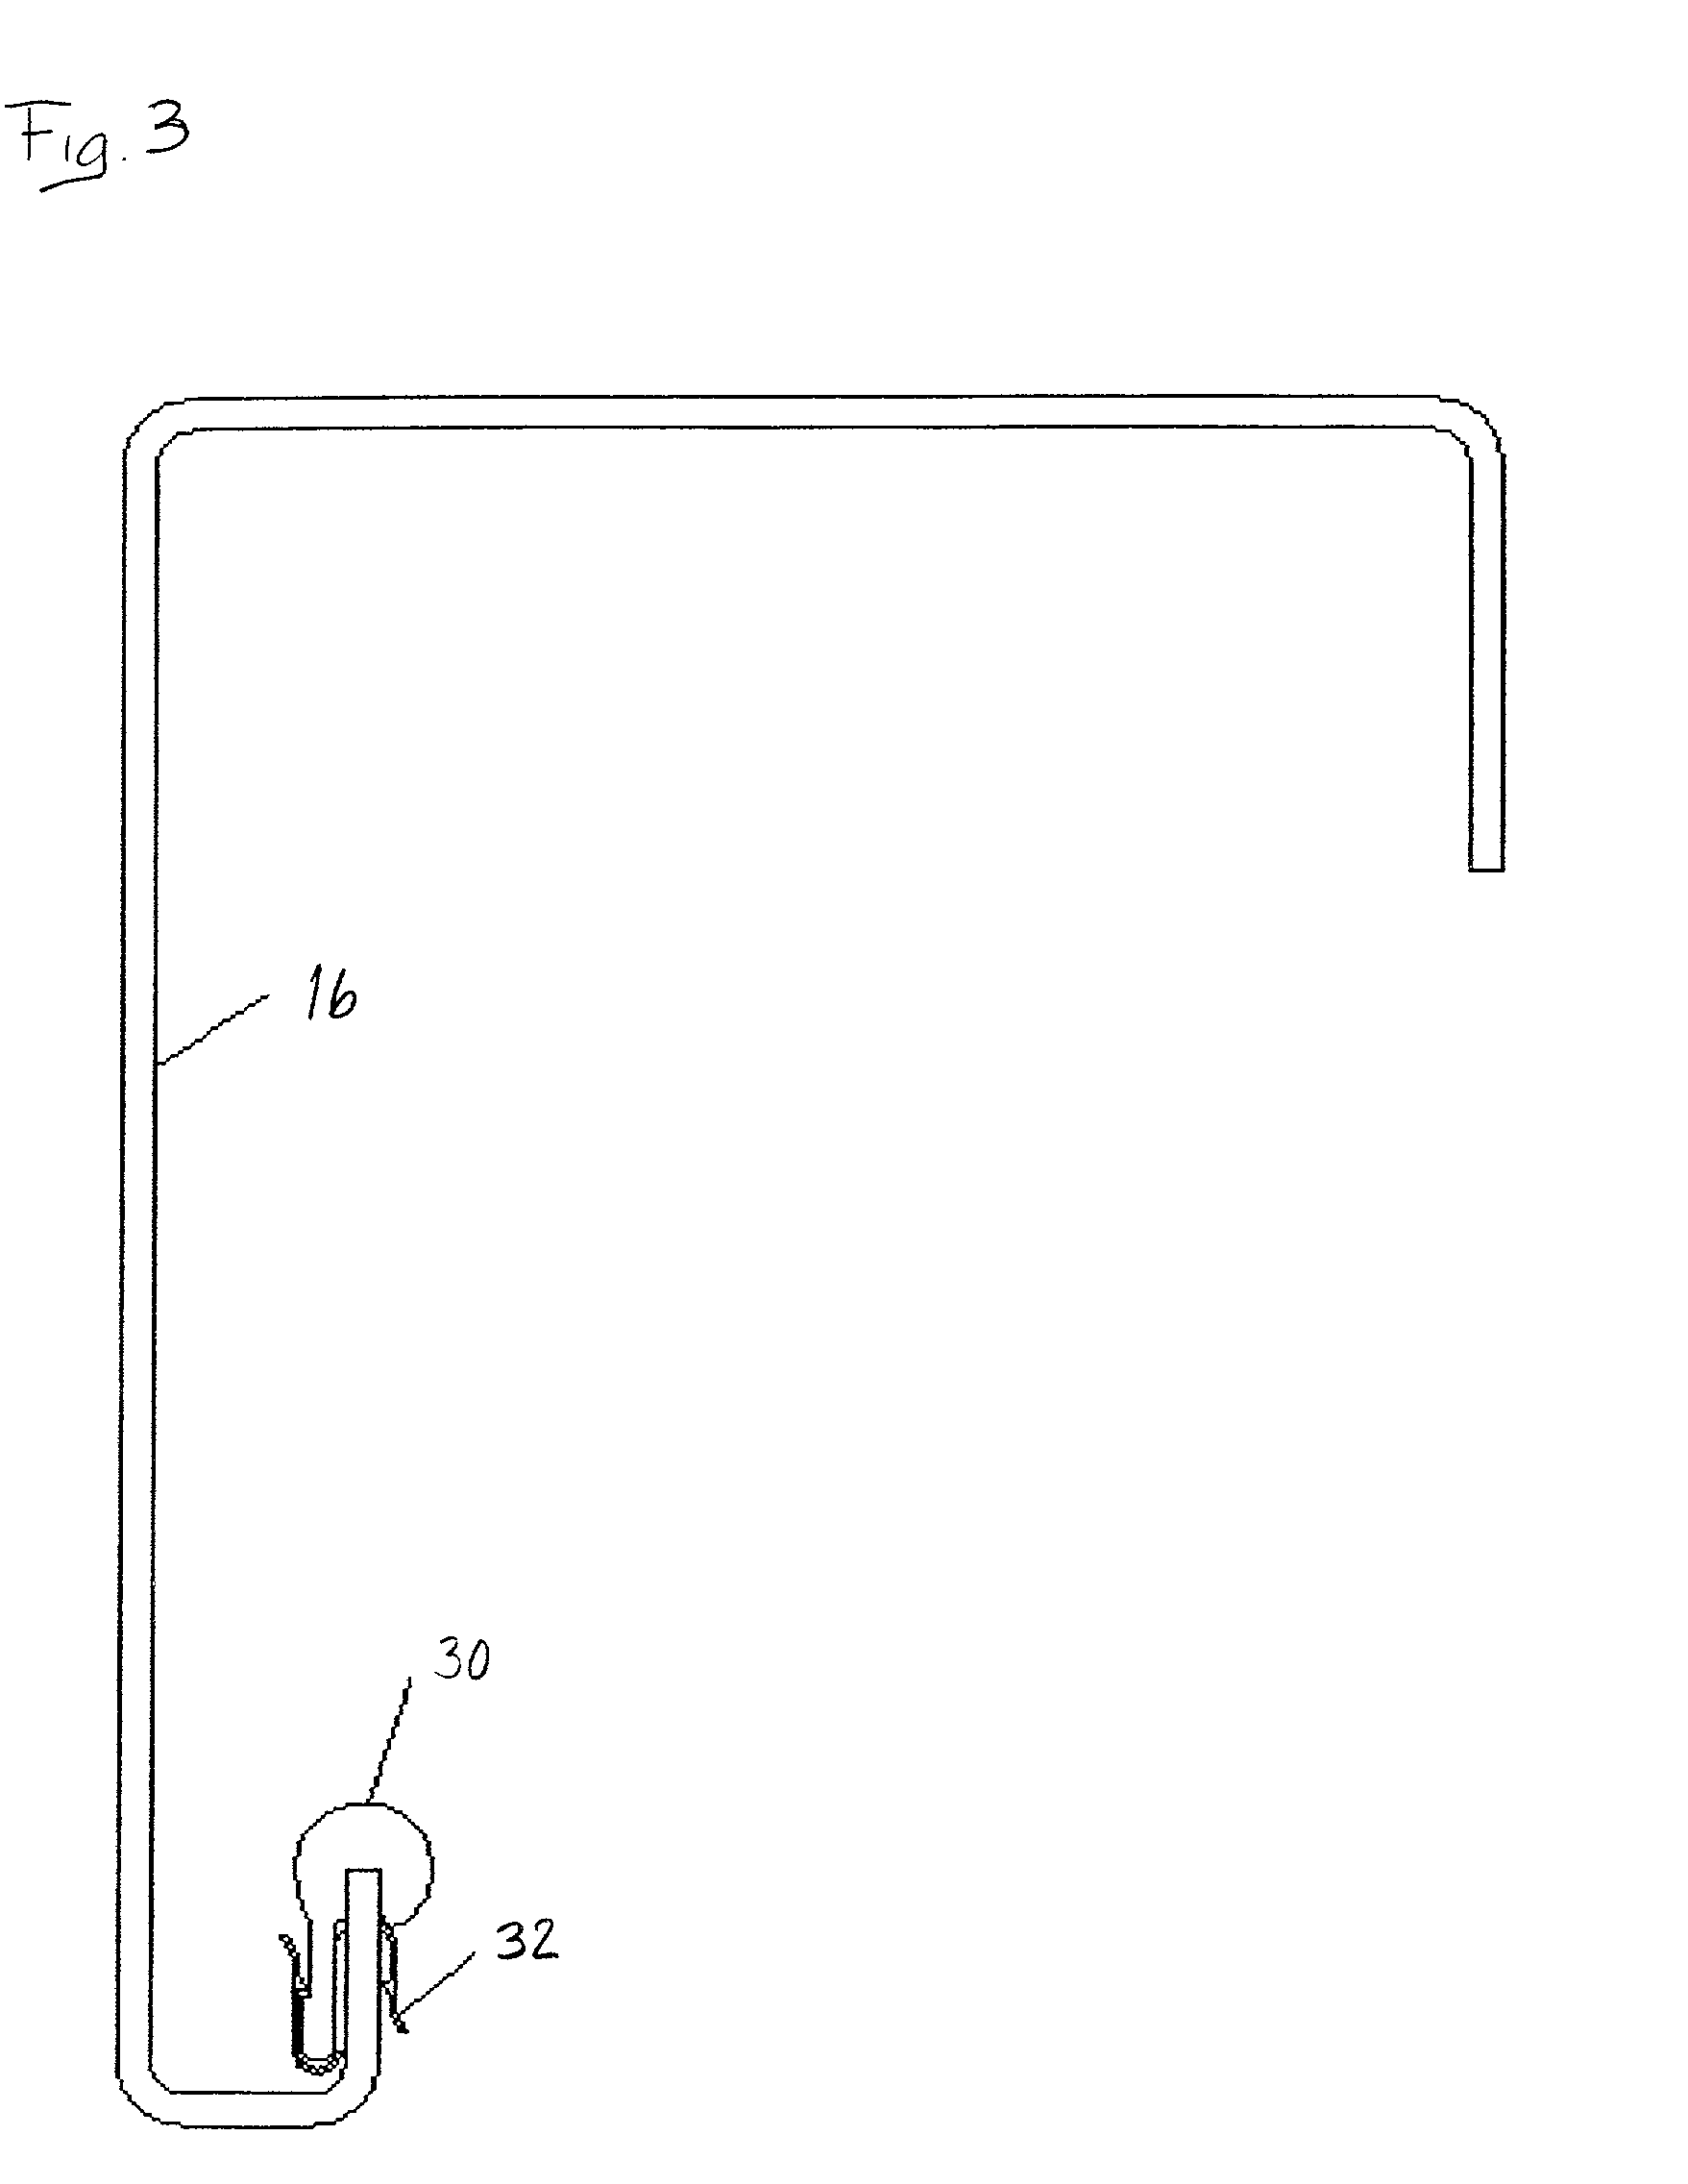 Door track for an elevator door system